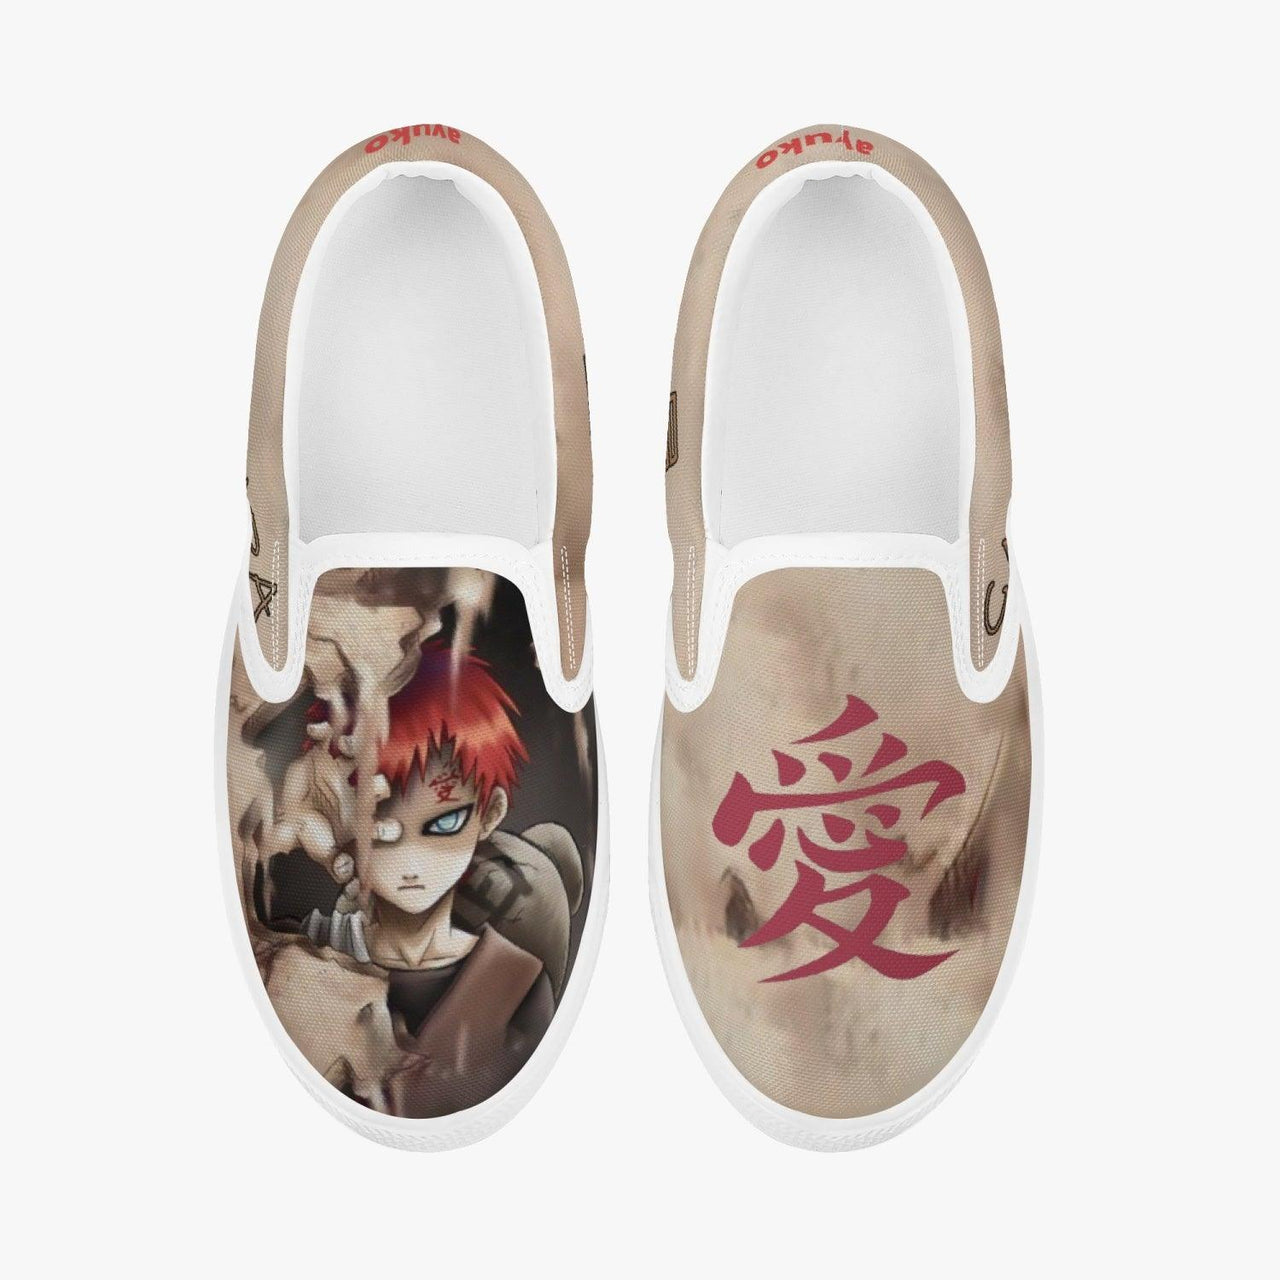 Naruto Shippuden Gaara Kids Slipons Anime Shoes _ Naruto _ Ayuko